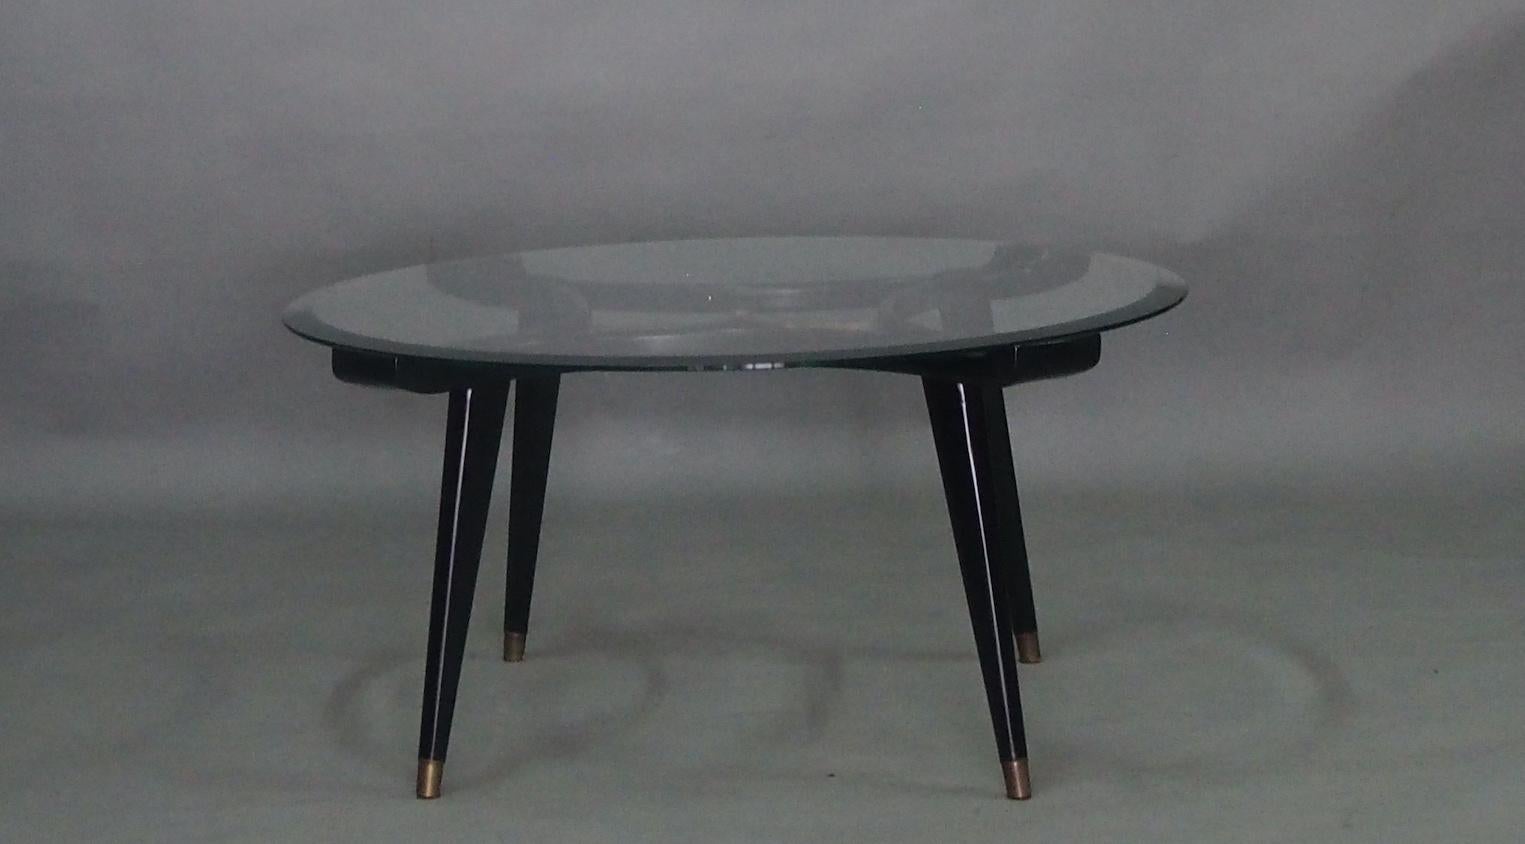 Table basse ronde, conçue par William Watting, produite par Fristho, Pays-Bas, années 1950. Un design très élégant grâce au bois de noyer chaud et organique combiné à un plateau en verre transparent. Le centre est orné d'un magnifique détail en